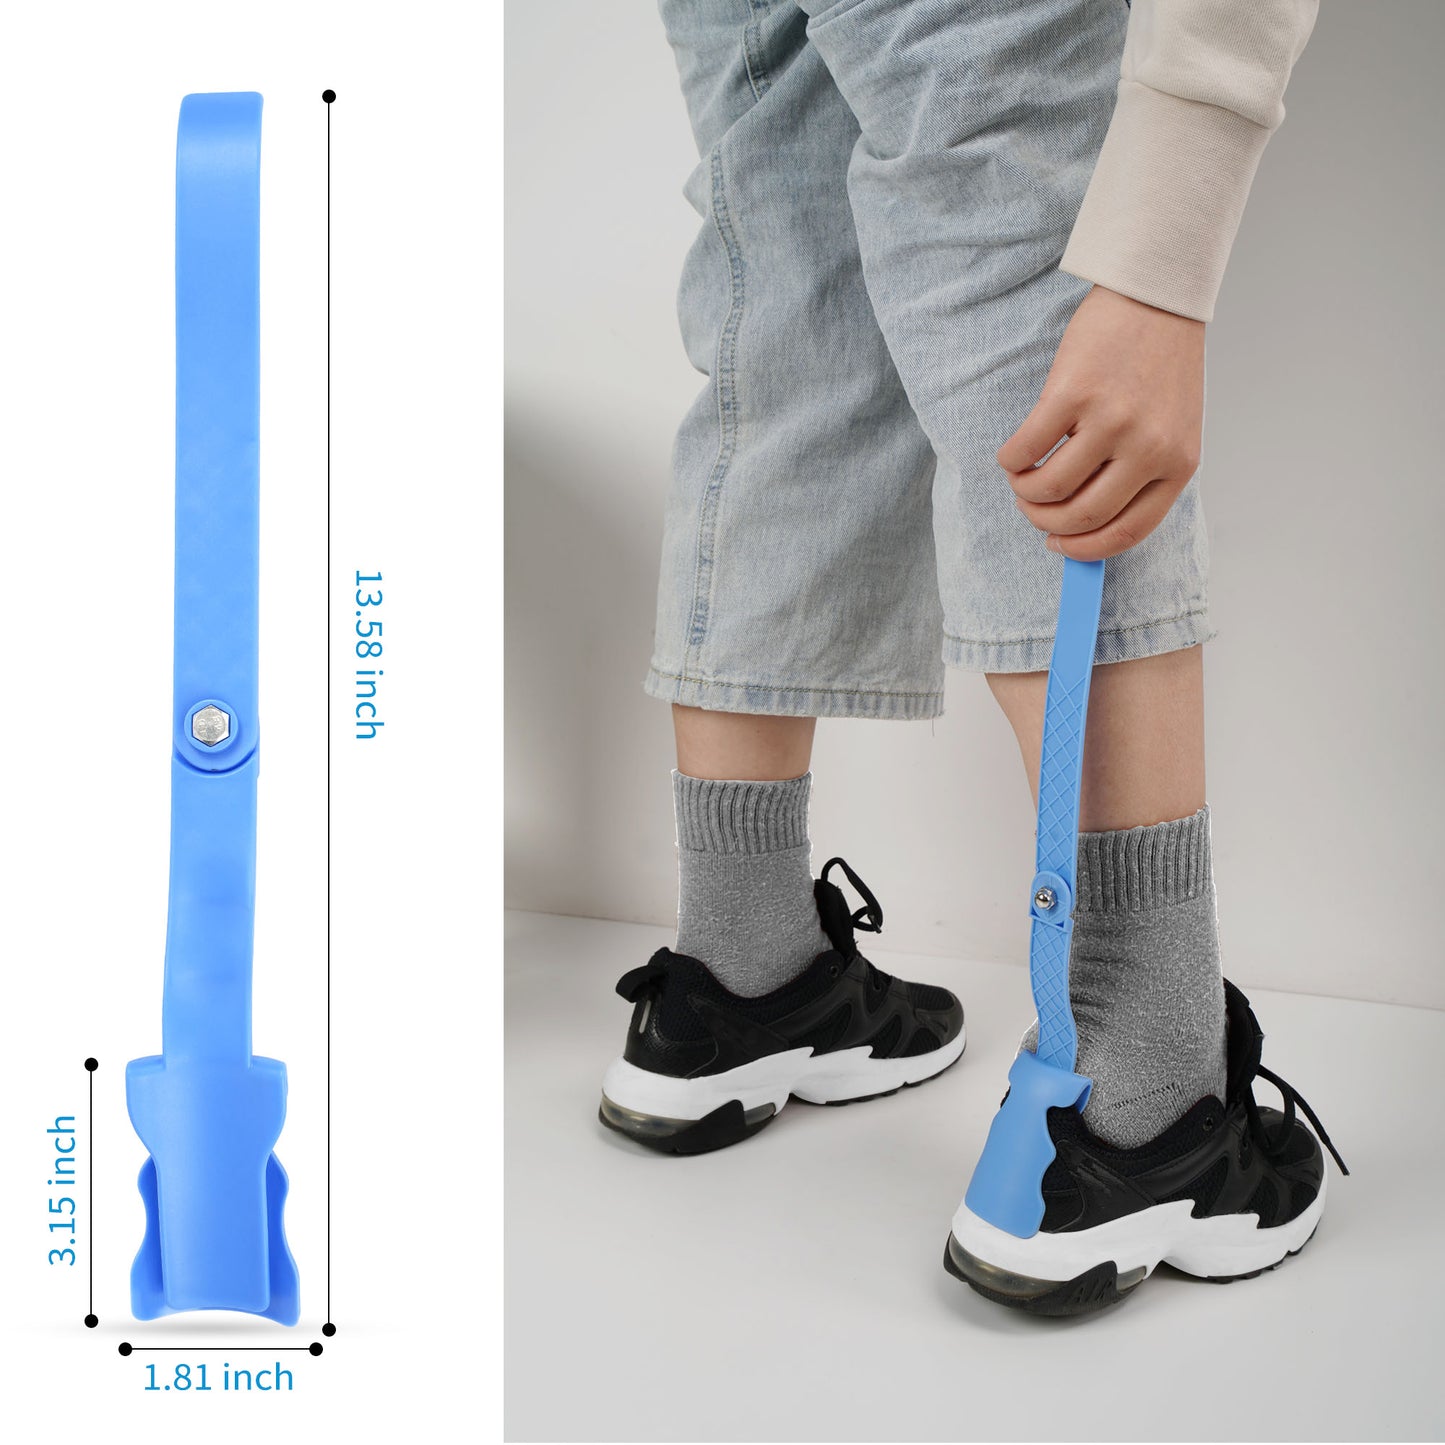 KEKOY Sock Helper - Kit de ayuda para quitar calcetines y calzador